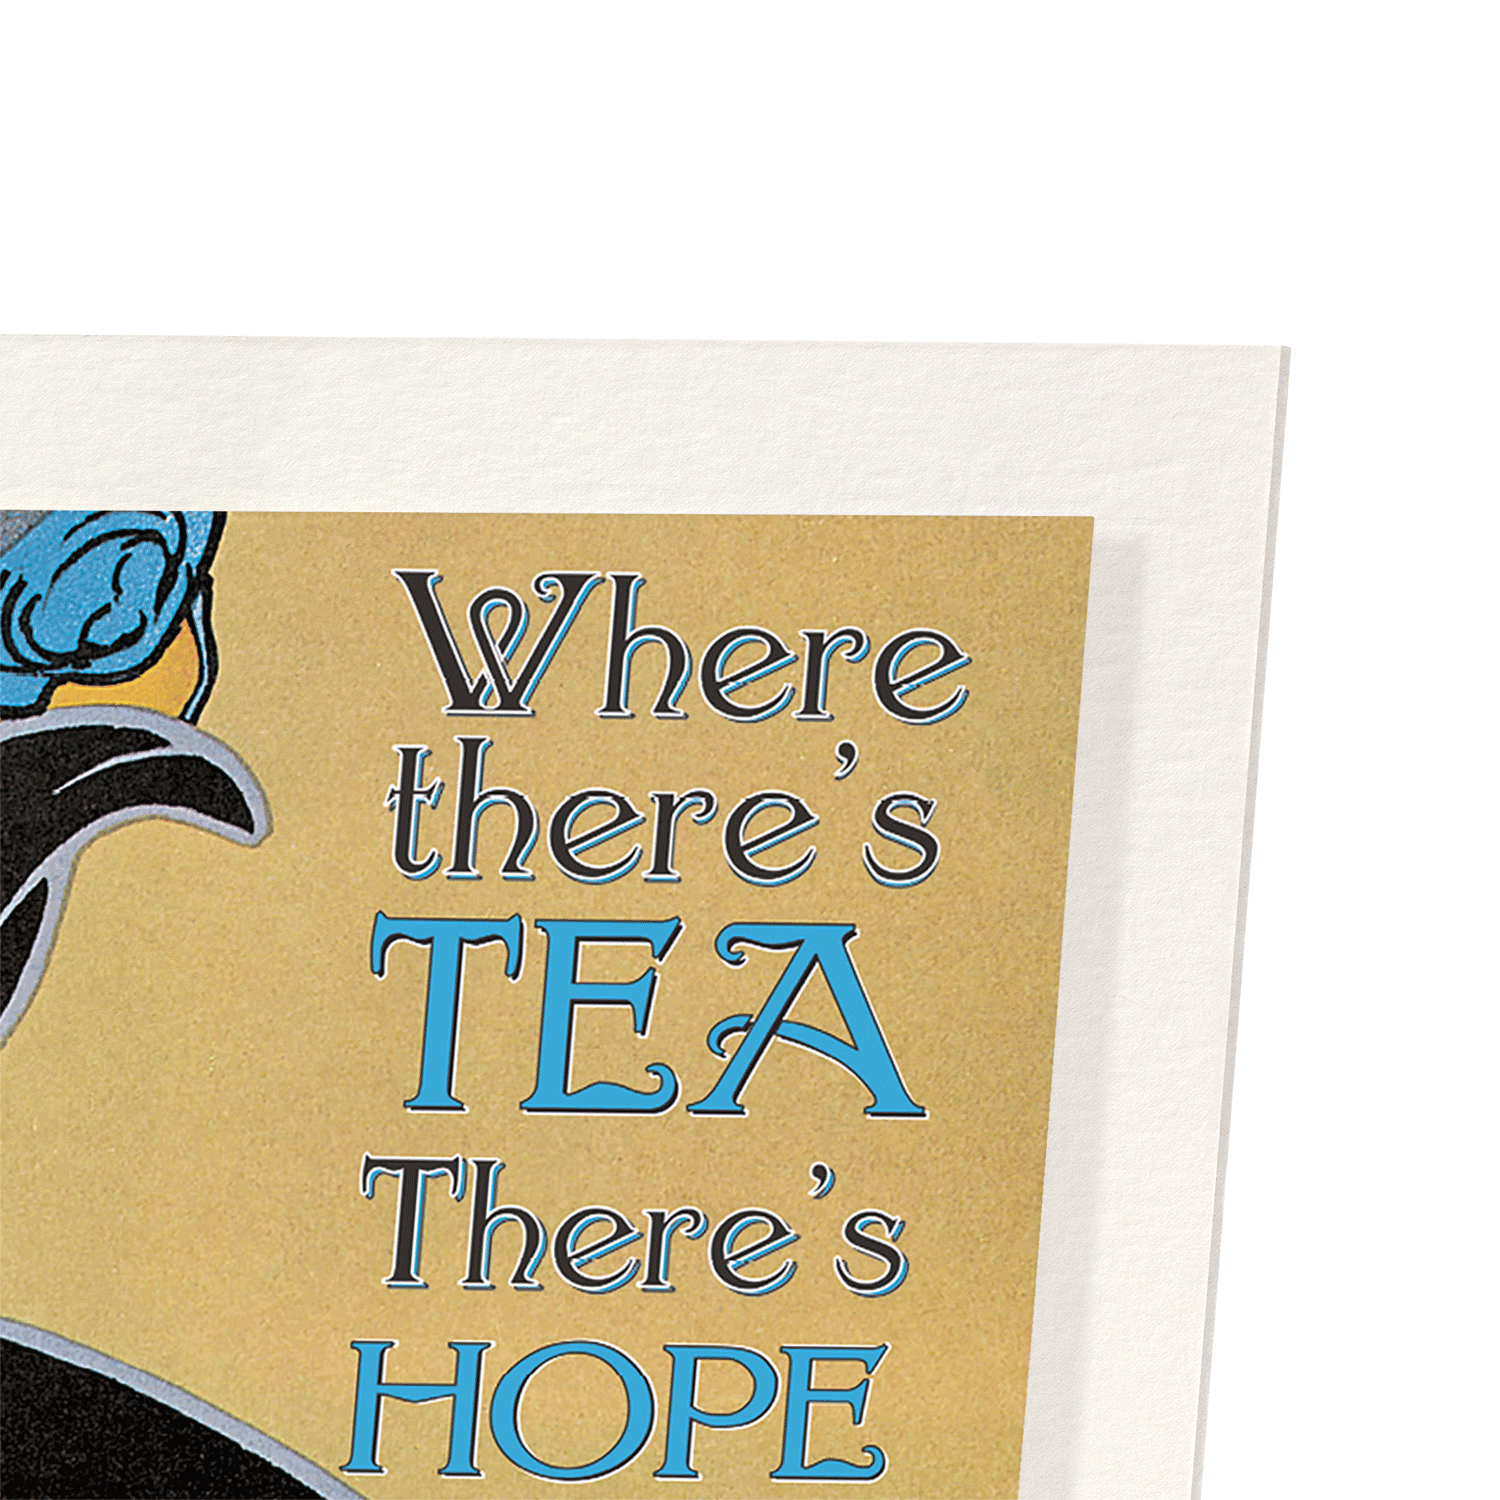 TEA COMFORT: Vintage Art Print